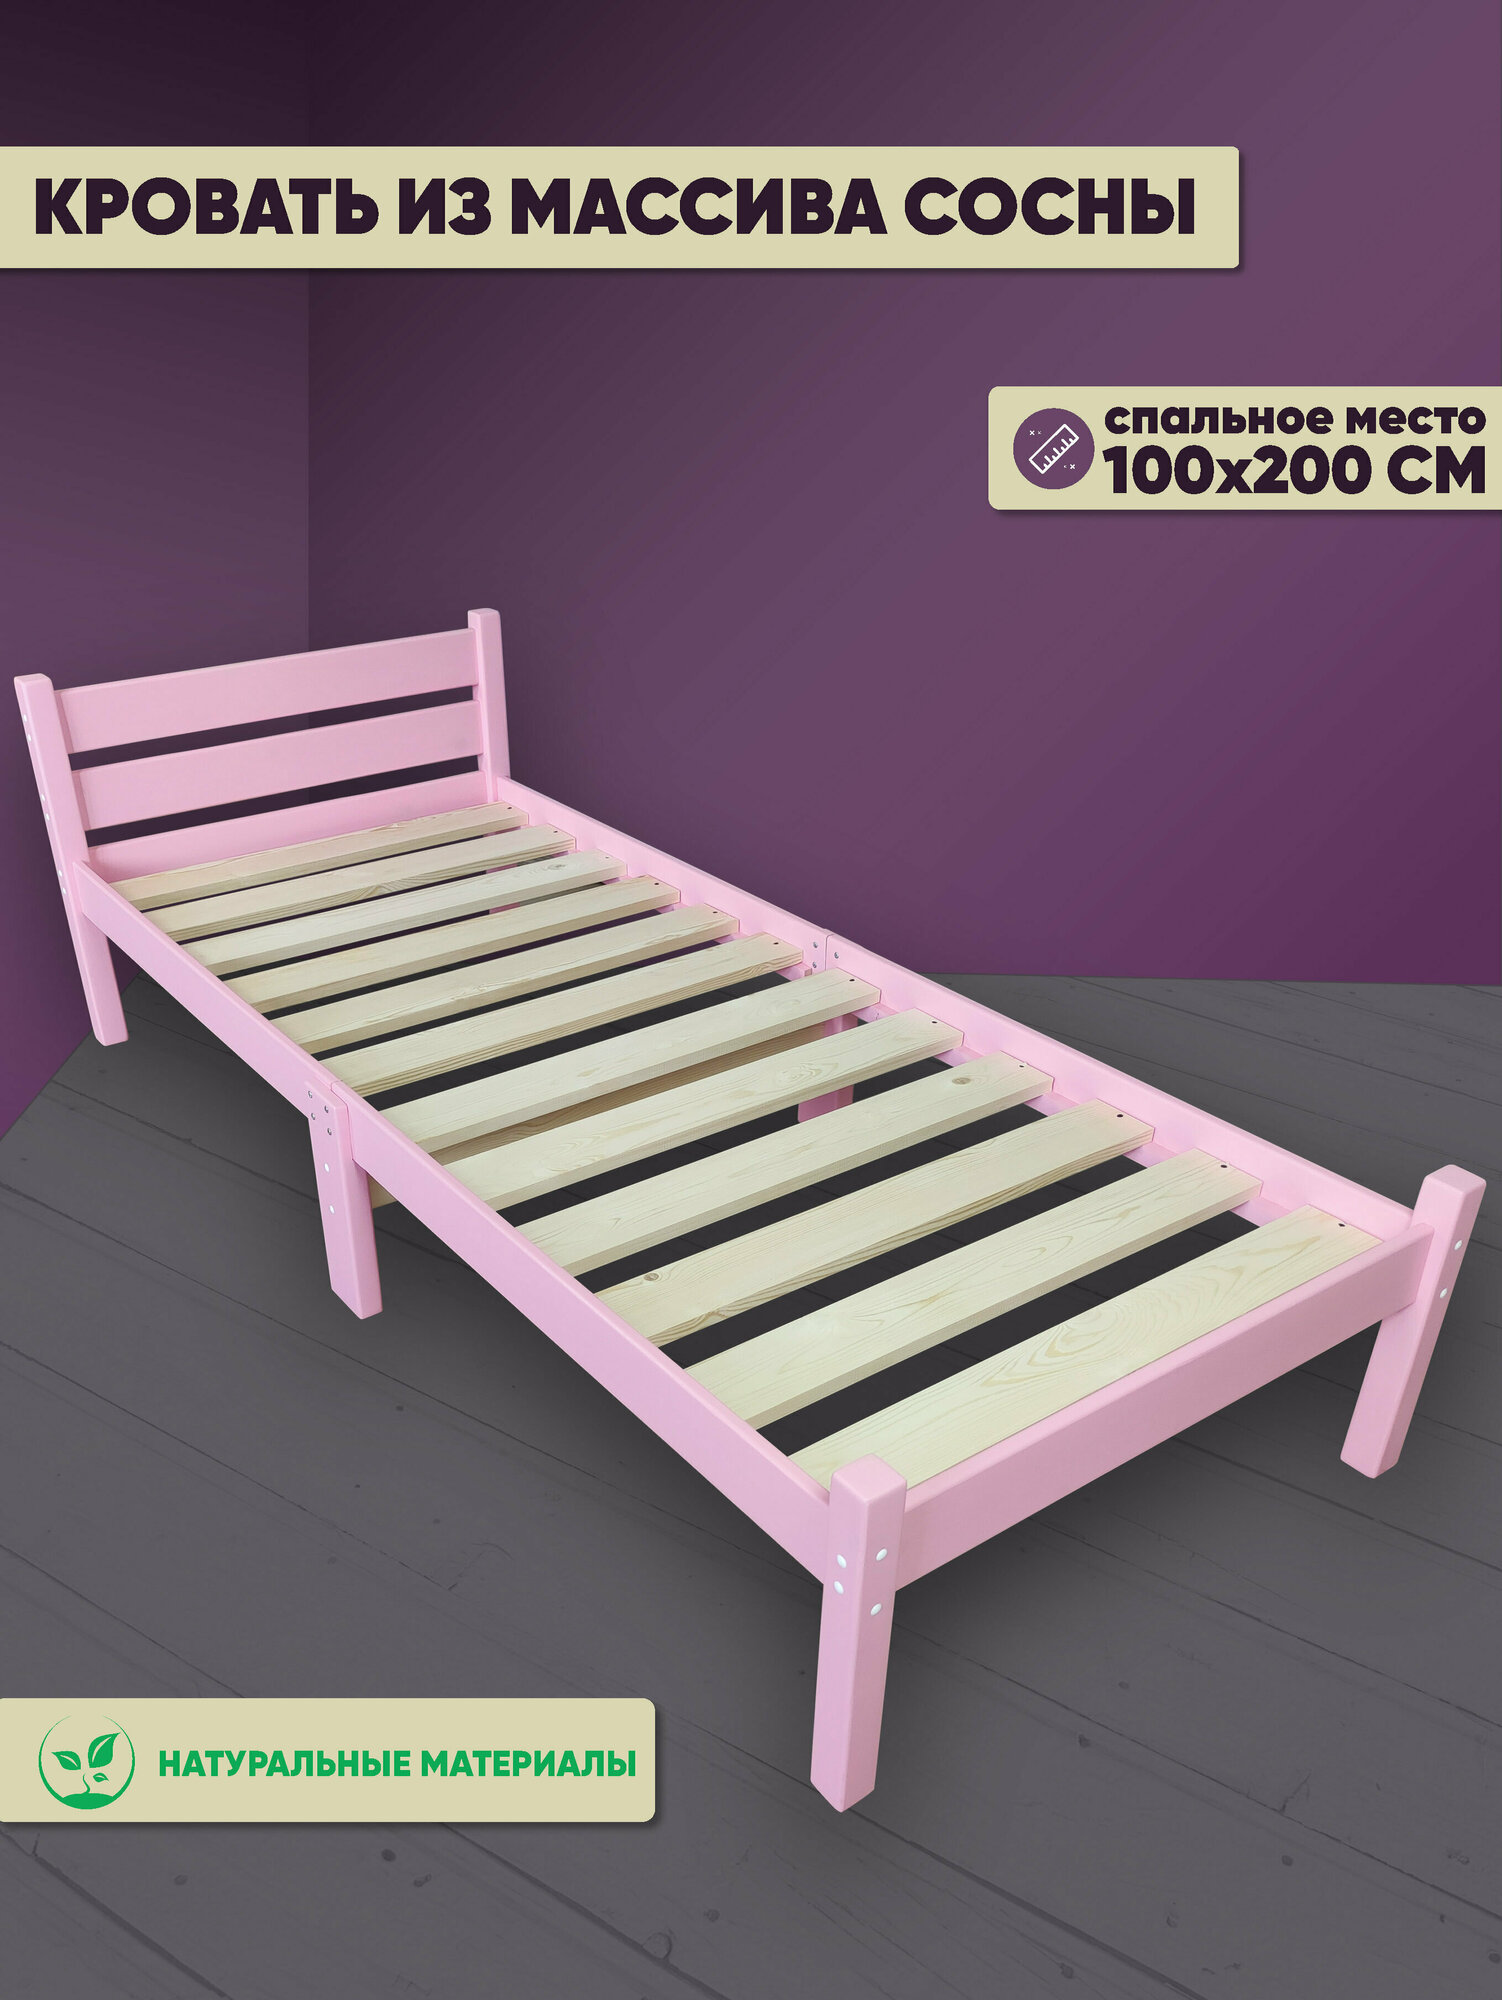 Кровать сосновая классика компакт, розовая, 200х100 см